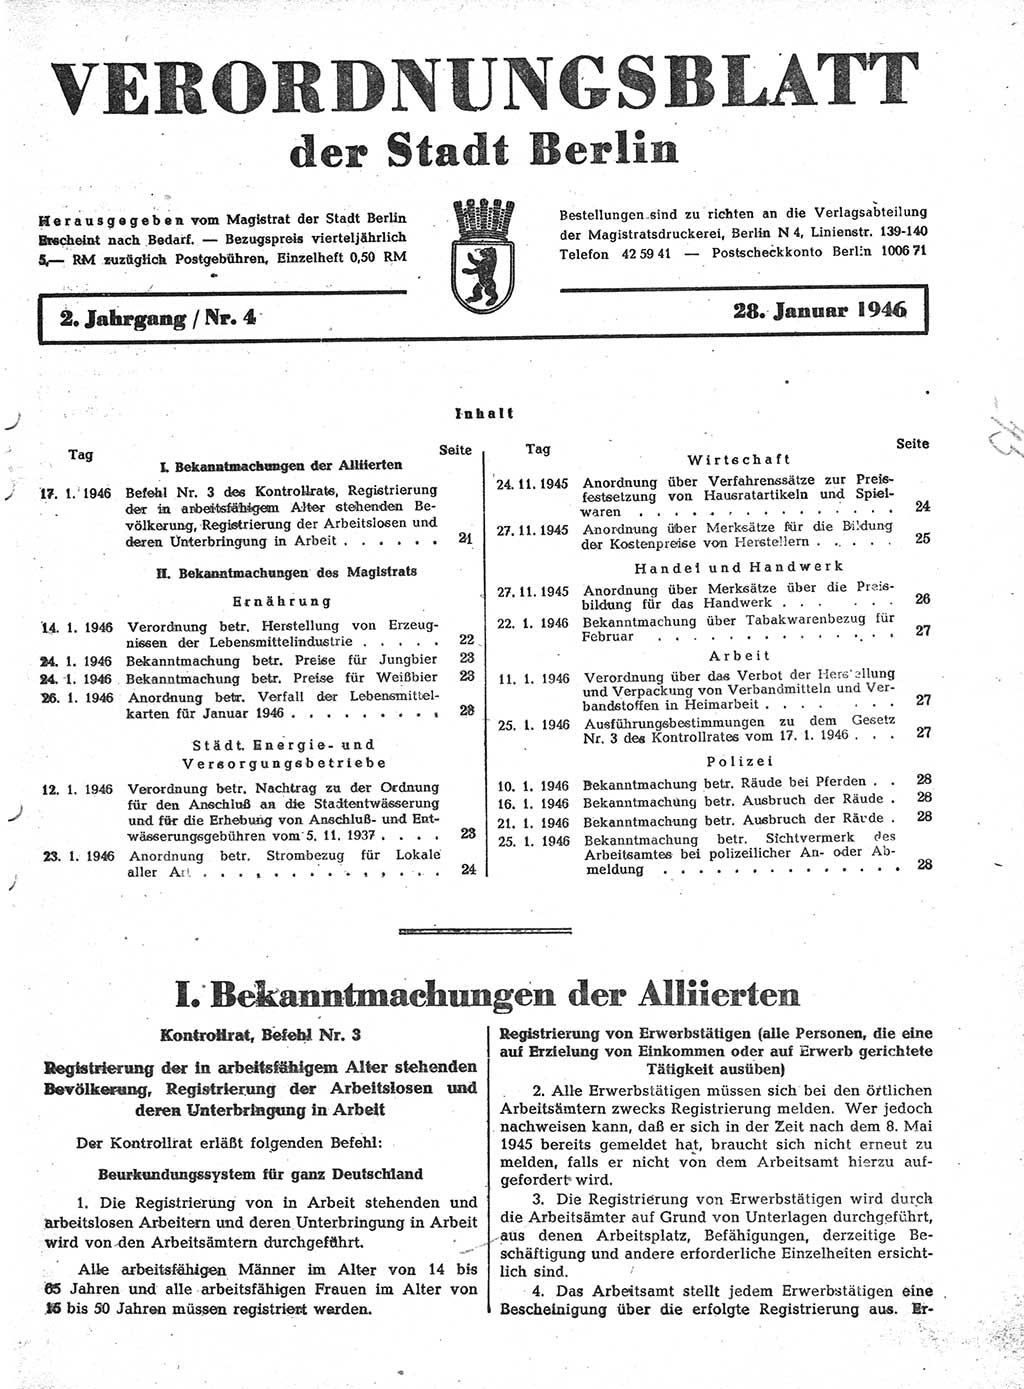 Verordnungsblatt (VOBl.) der Stadt Berlin, für Groß-Berlin 1946, Seite 21 (VOBl. Bln. 1946, S. 21)